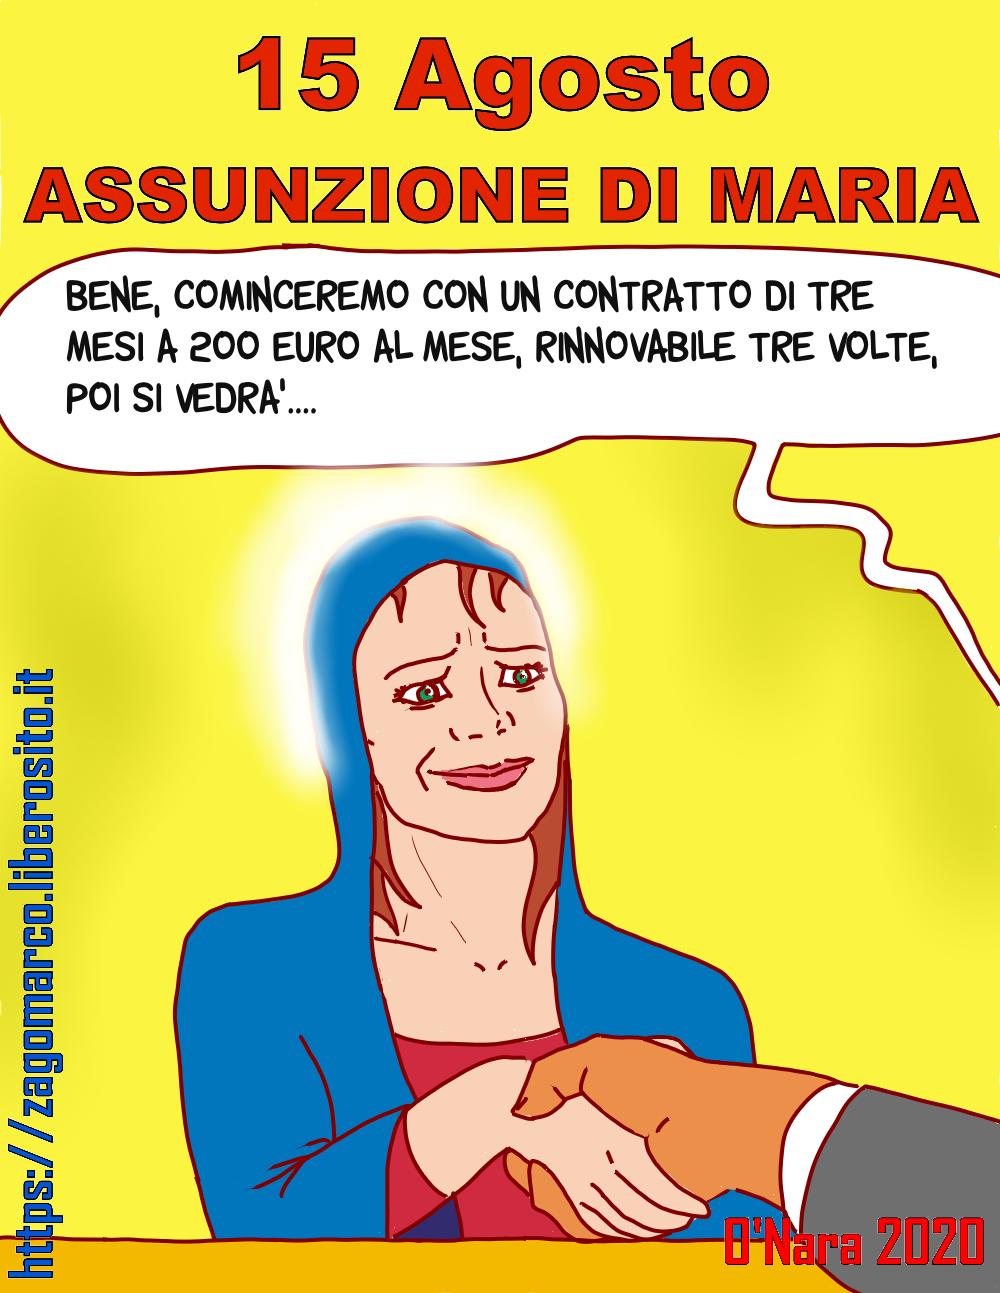 assunzione di Maria by Marco Zagonara